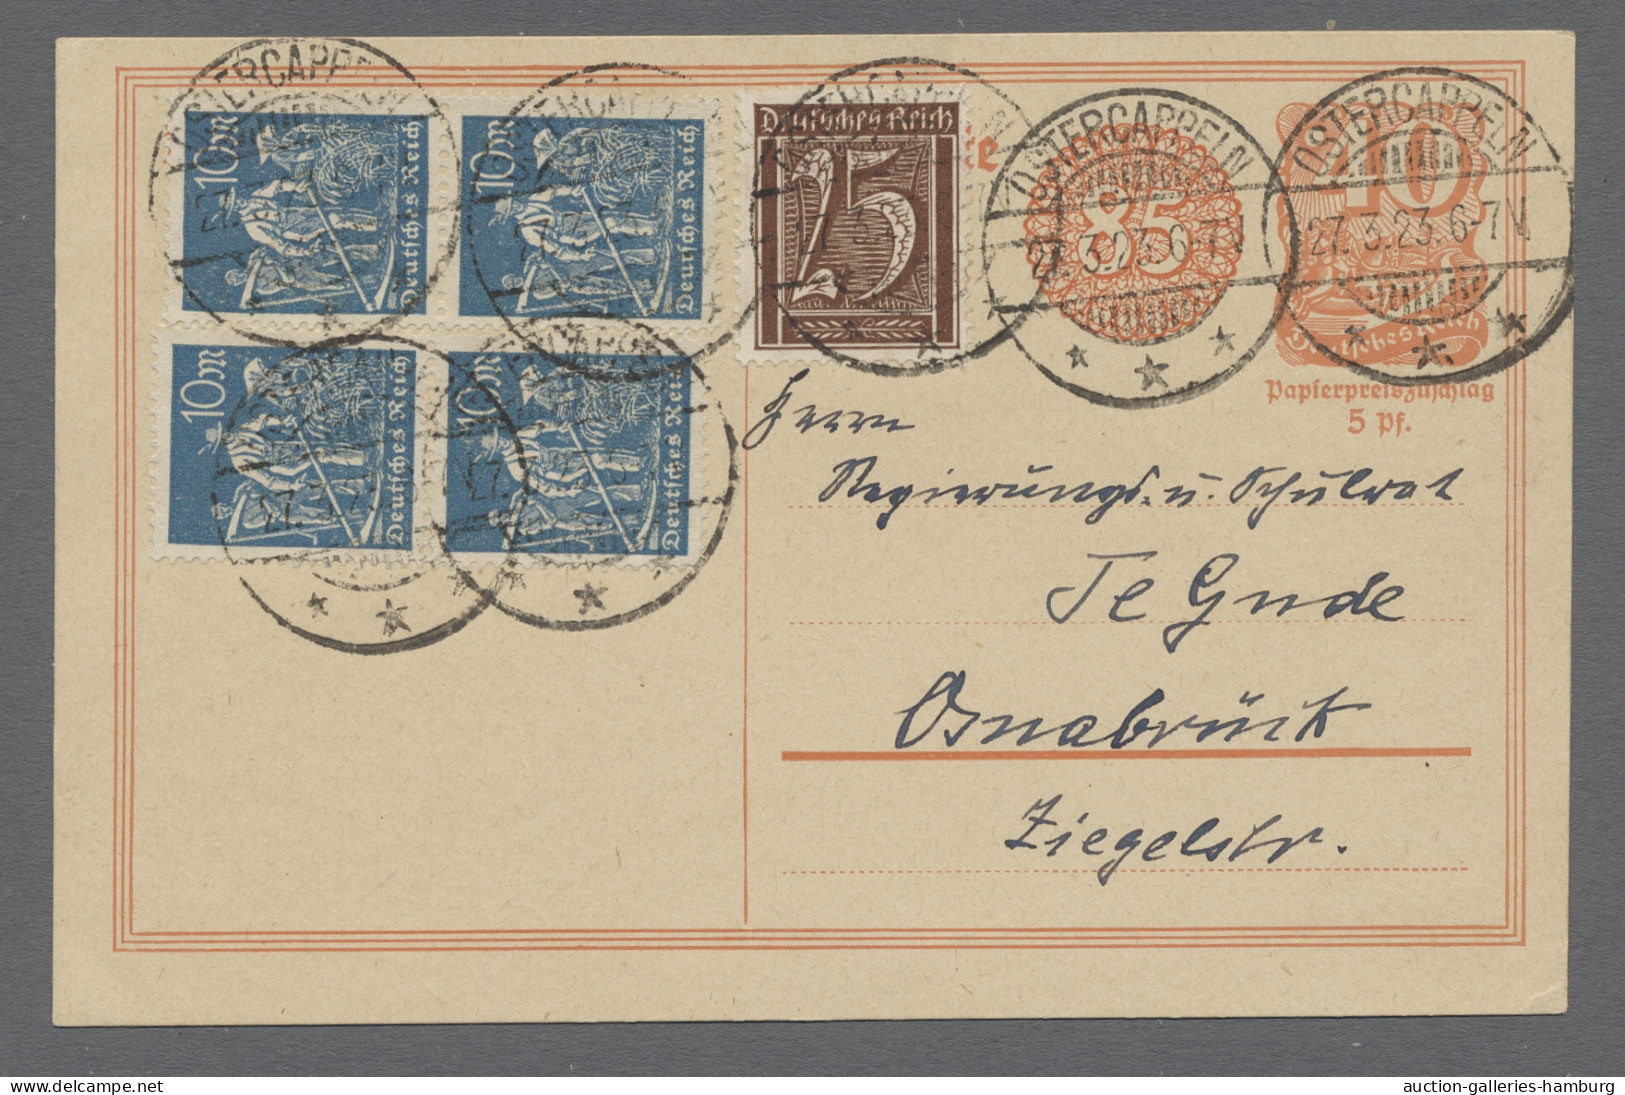 Deutsches Reich - Ganzsachen: 1872-1932, zwei Briefalben mit insgesamt rund 200